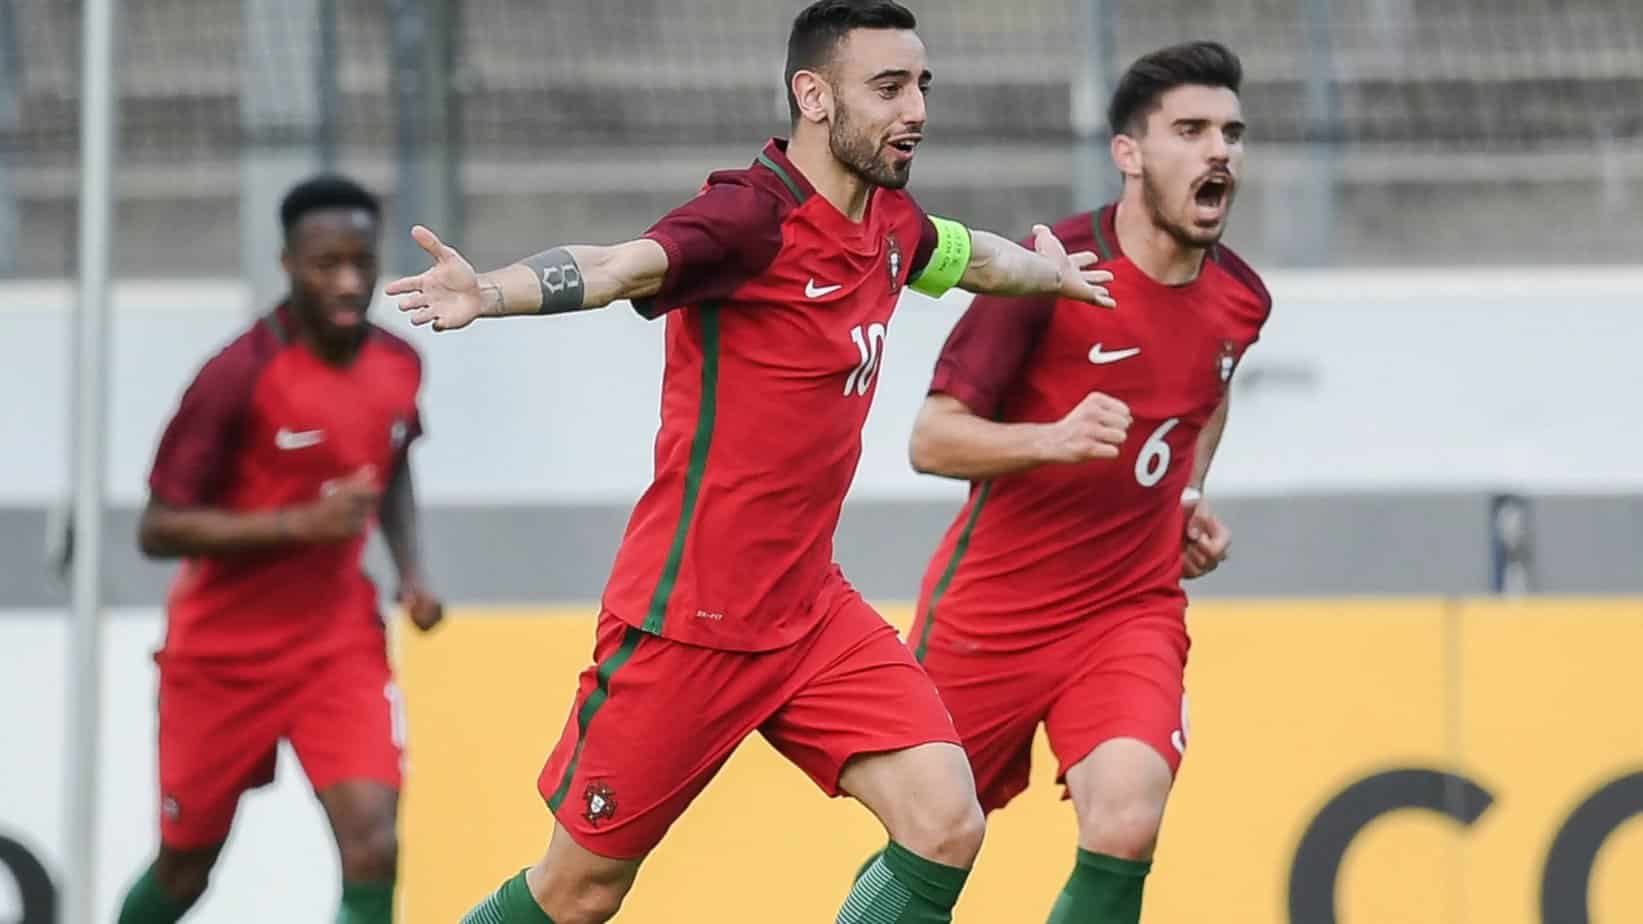 Vista previa y selección gratuita de Portugal vs.Bosnia y Herzegovina